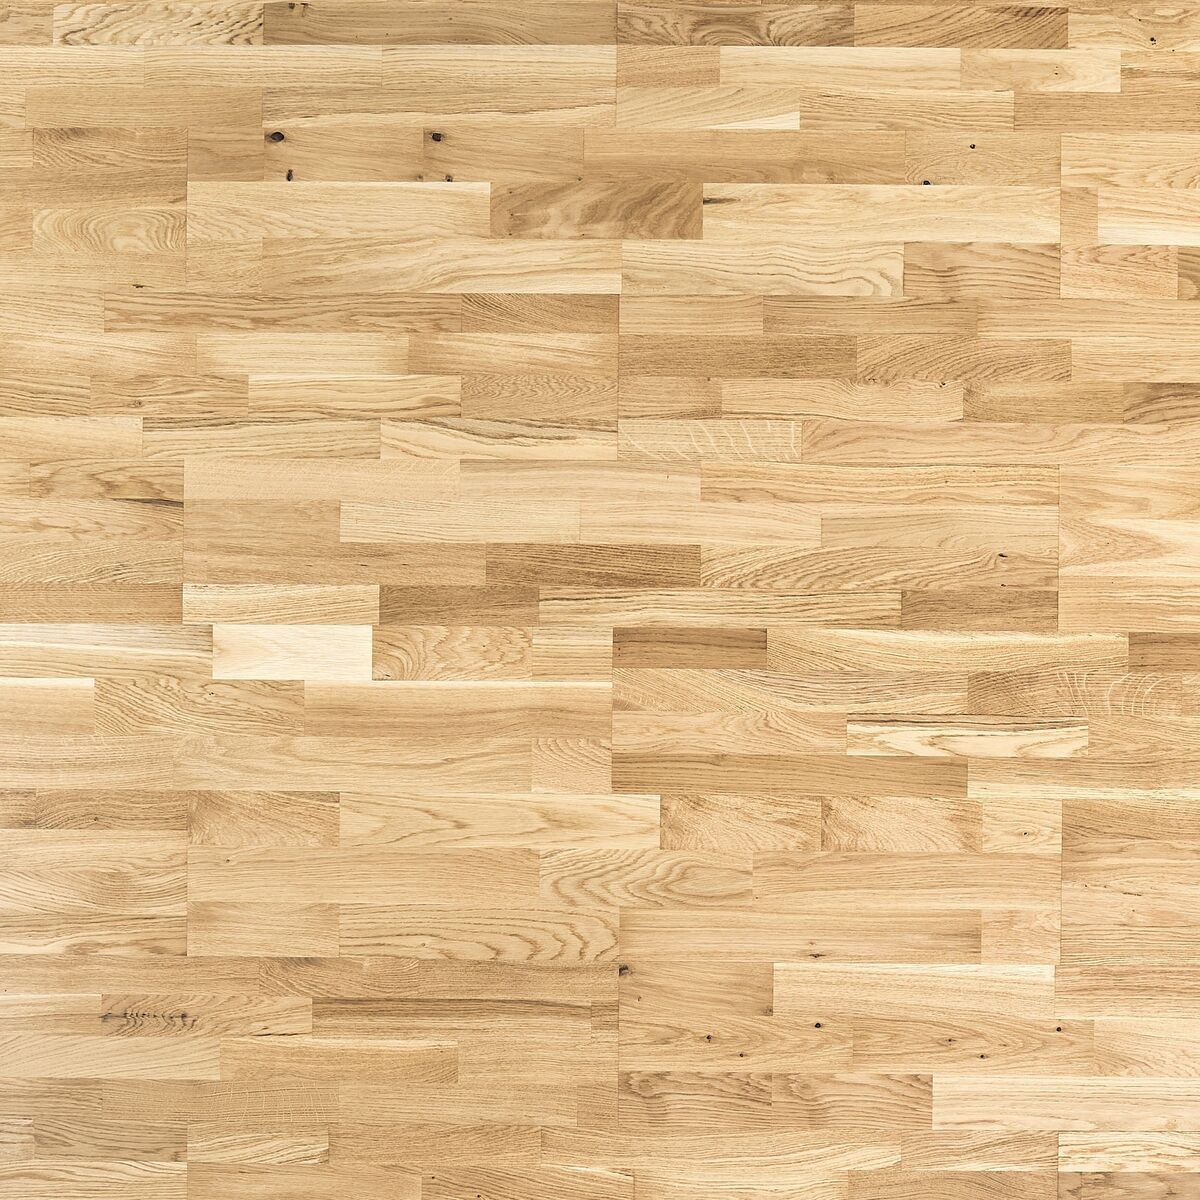 Podłoga drewniana deska trójwarstwowa Dąb rustic 4-lamelowa lakier półmatowy 14 mm Barlinek